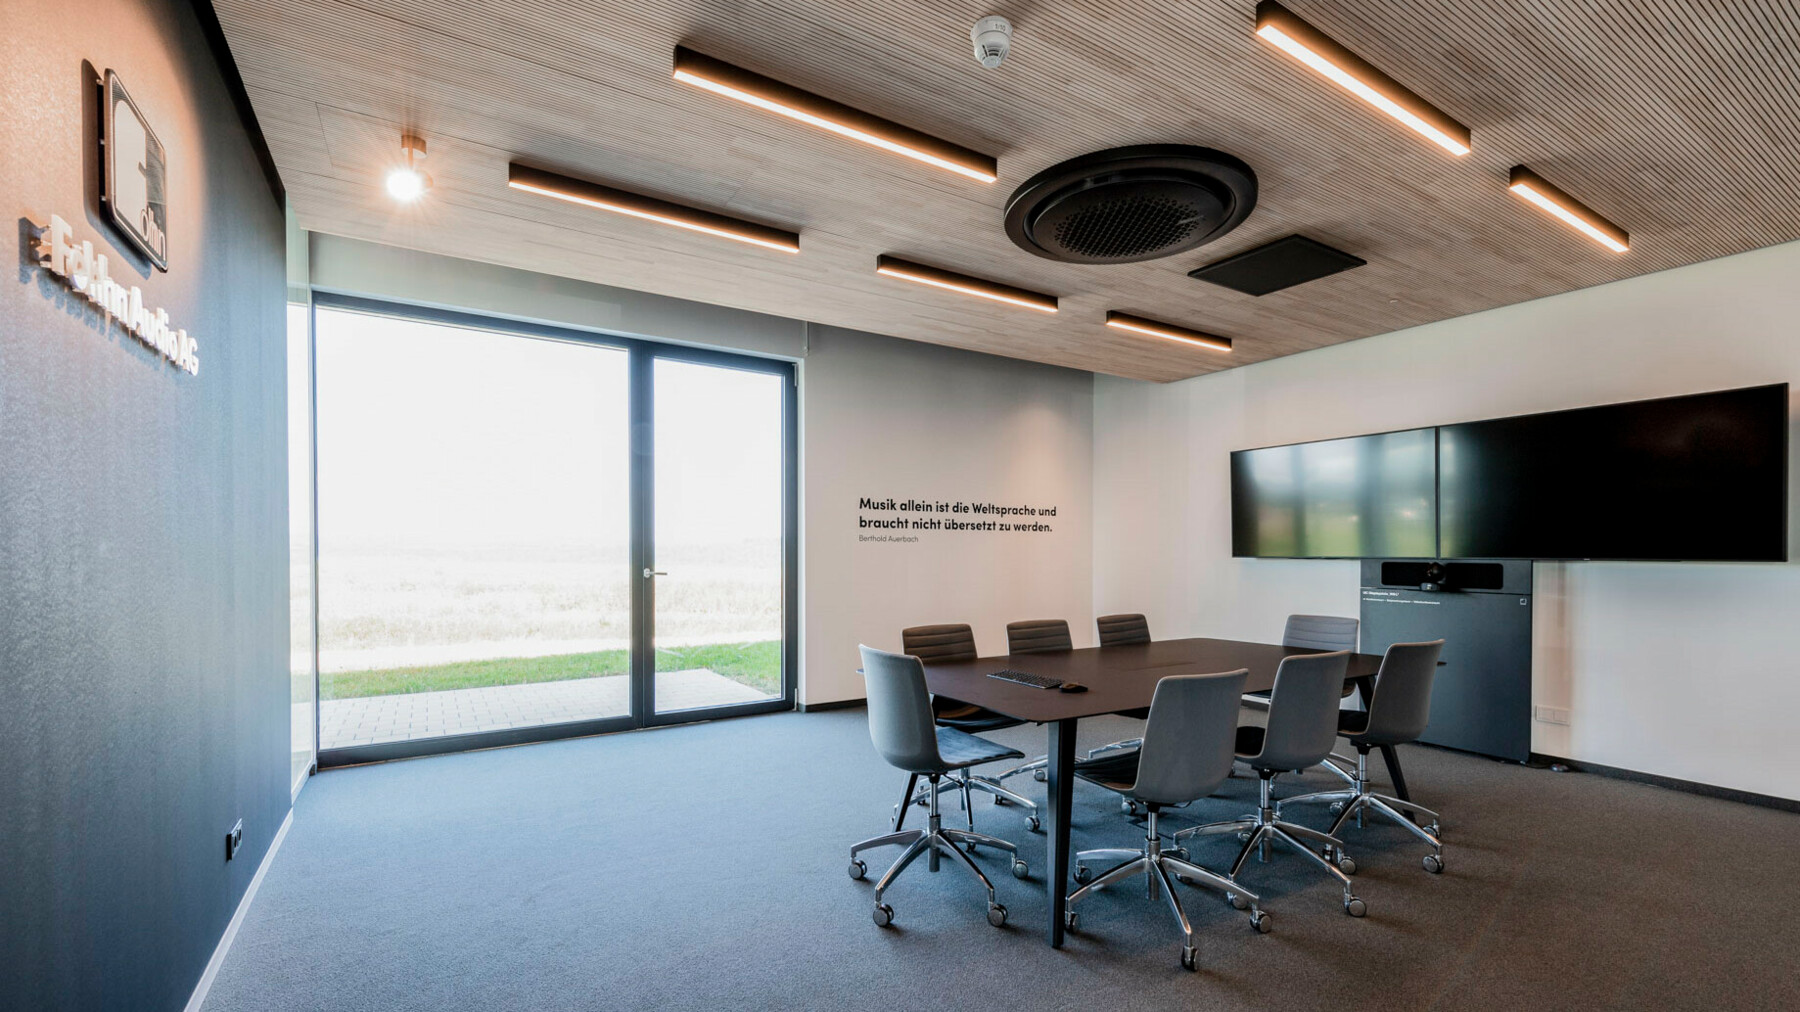 Dieser Sitzungsraum unterstützt eine konzentrierte und produktive Arbeitsatmosphäre durch optimales Raumklima und eine helle, freundliche Atmosphäre. 